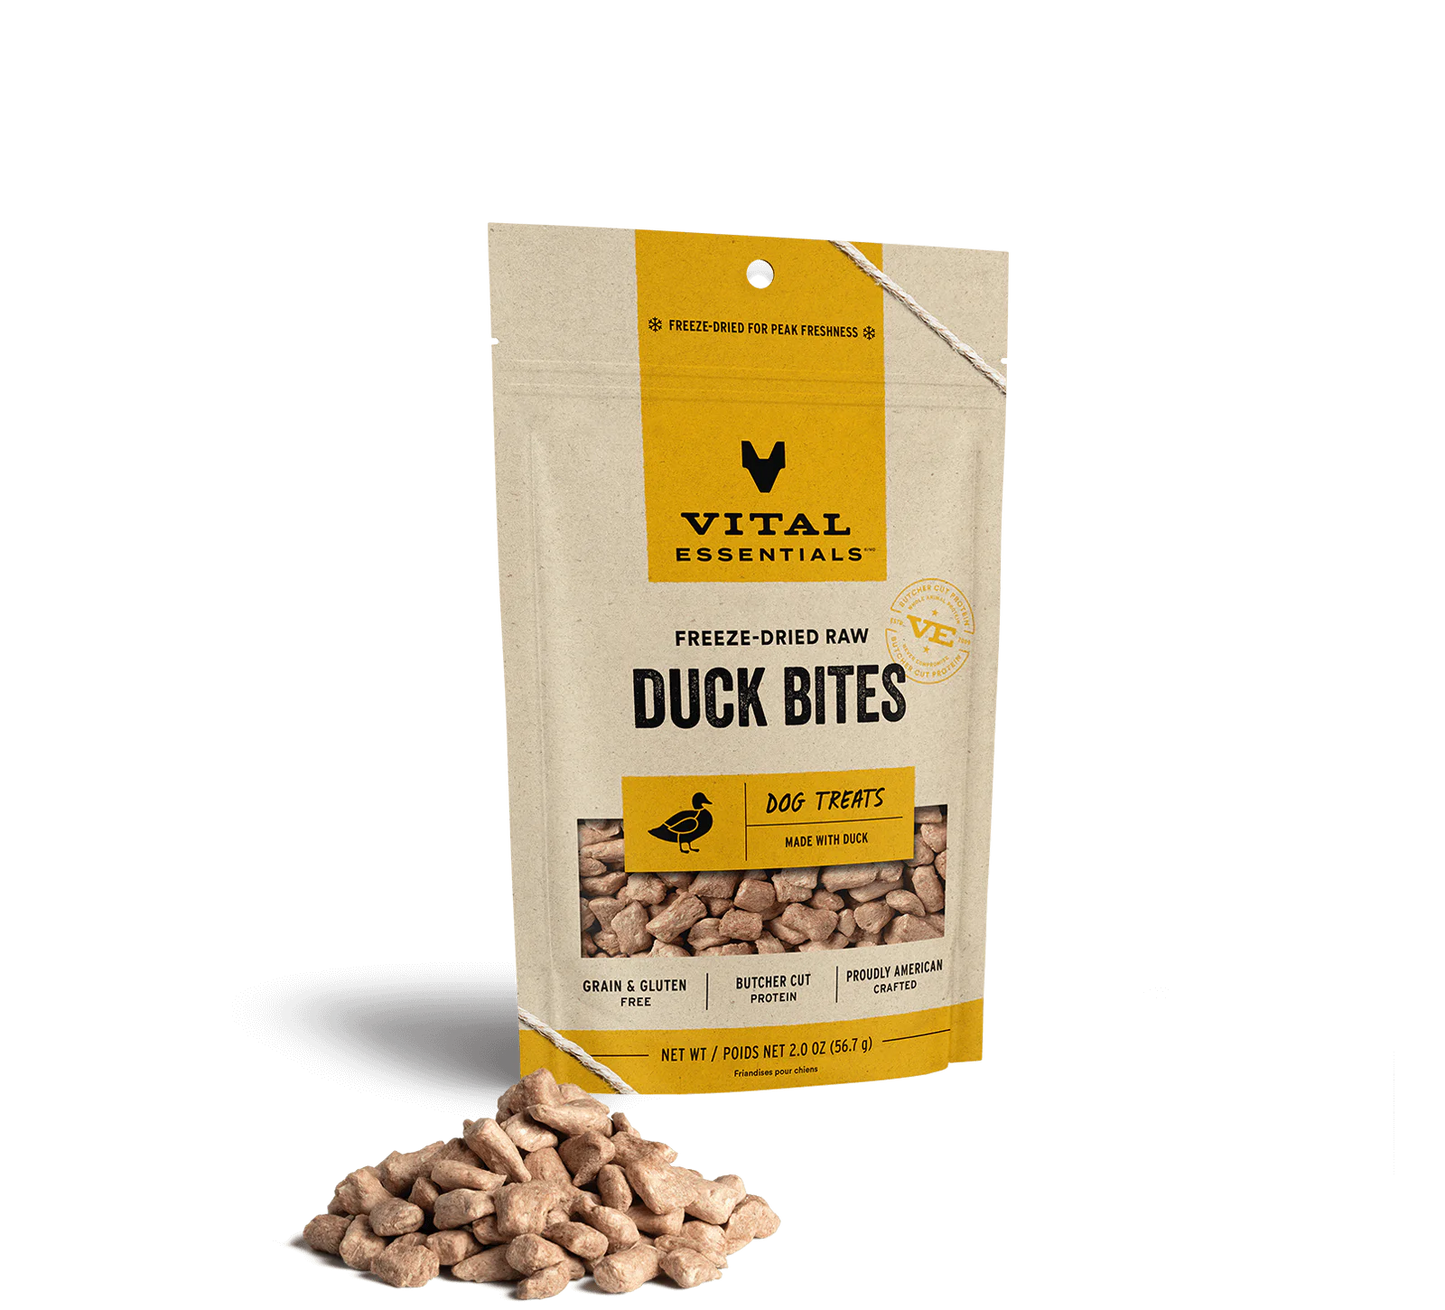 Vital Essentials Freeze-Dried Raw Duck Bites 2-oz, Dog Treat